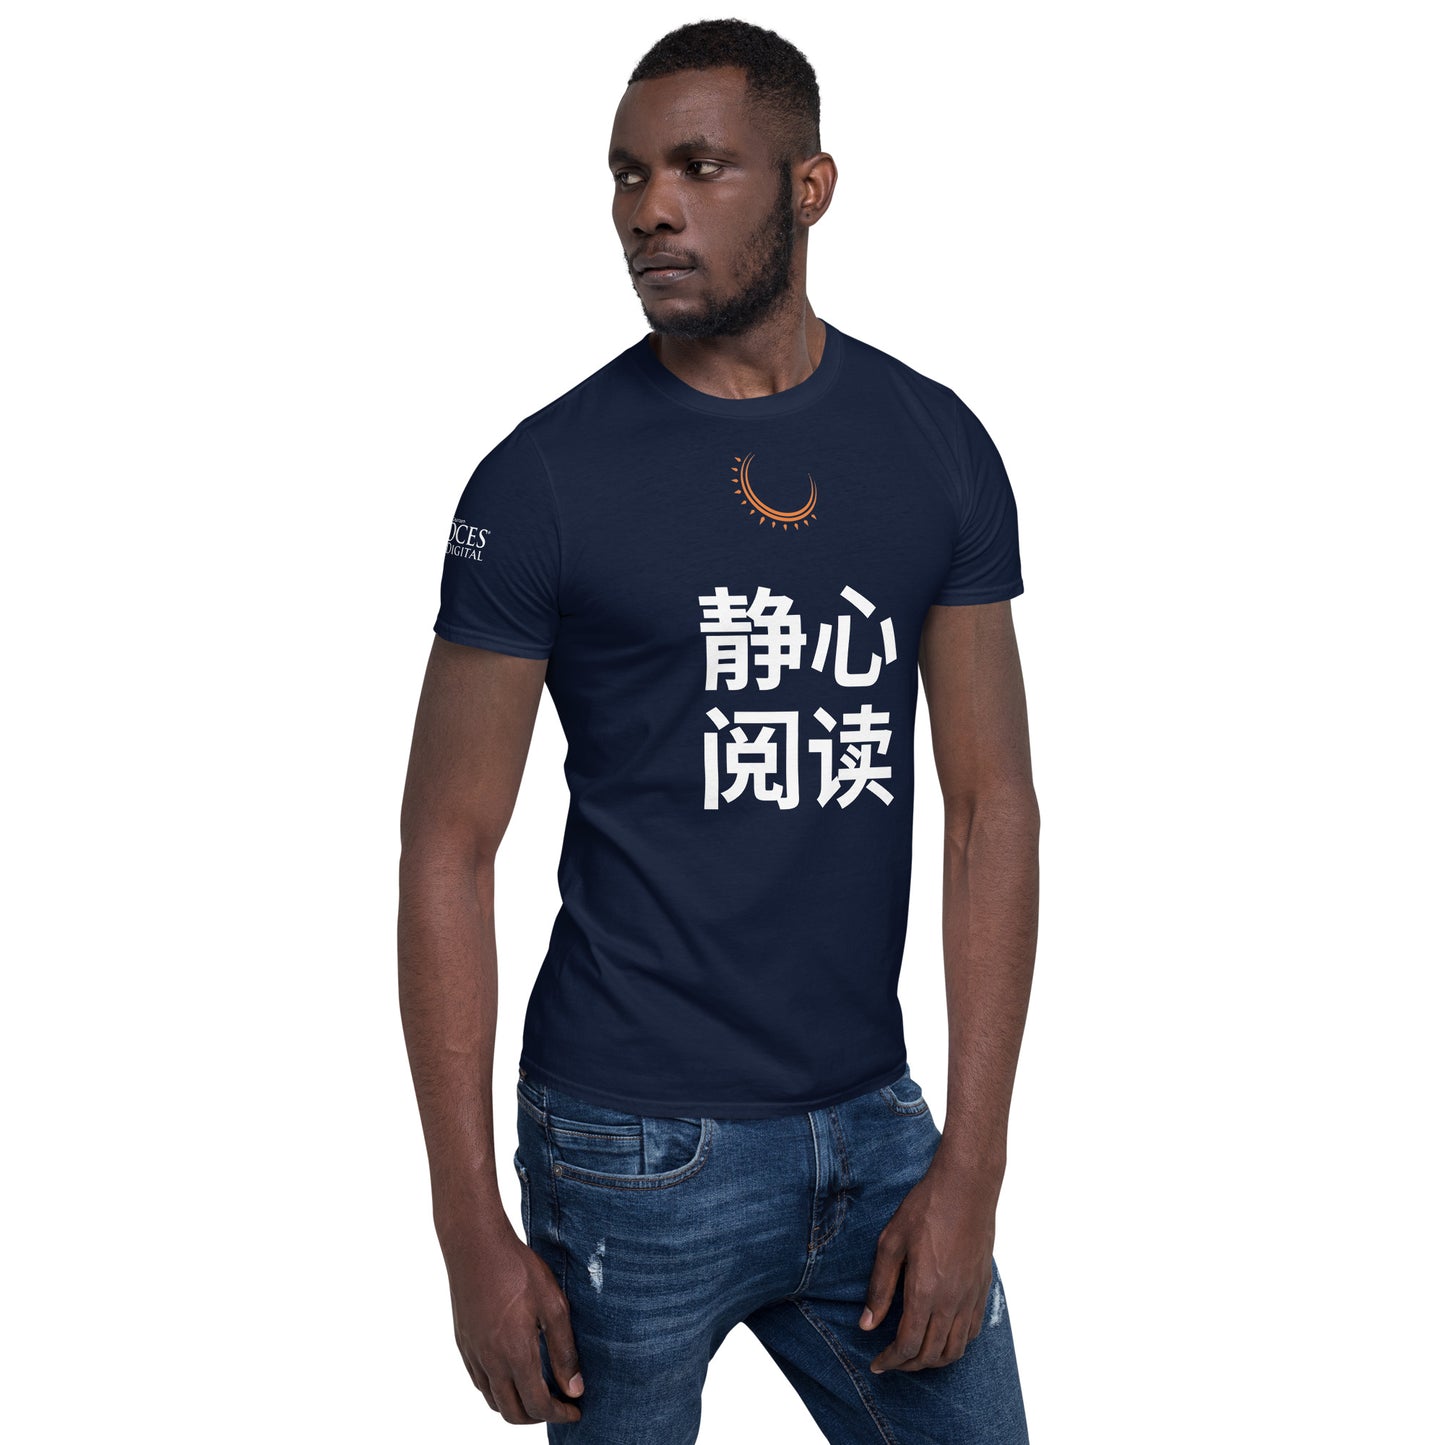 Mandarin "Keep Calm and Read" T-Shirt